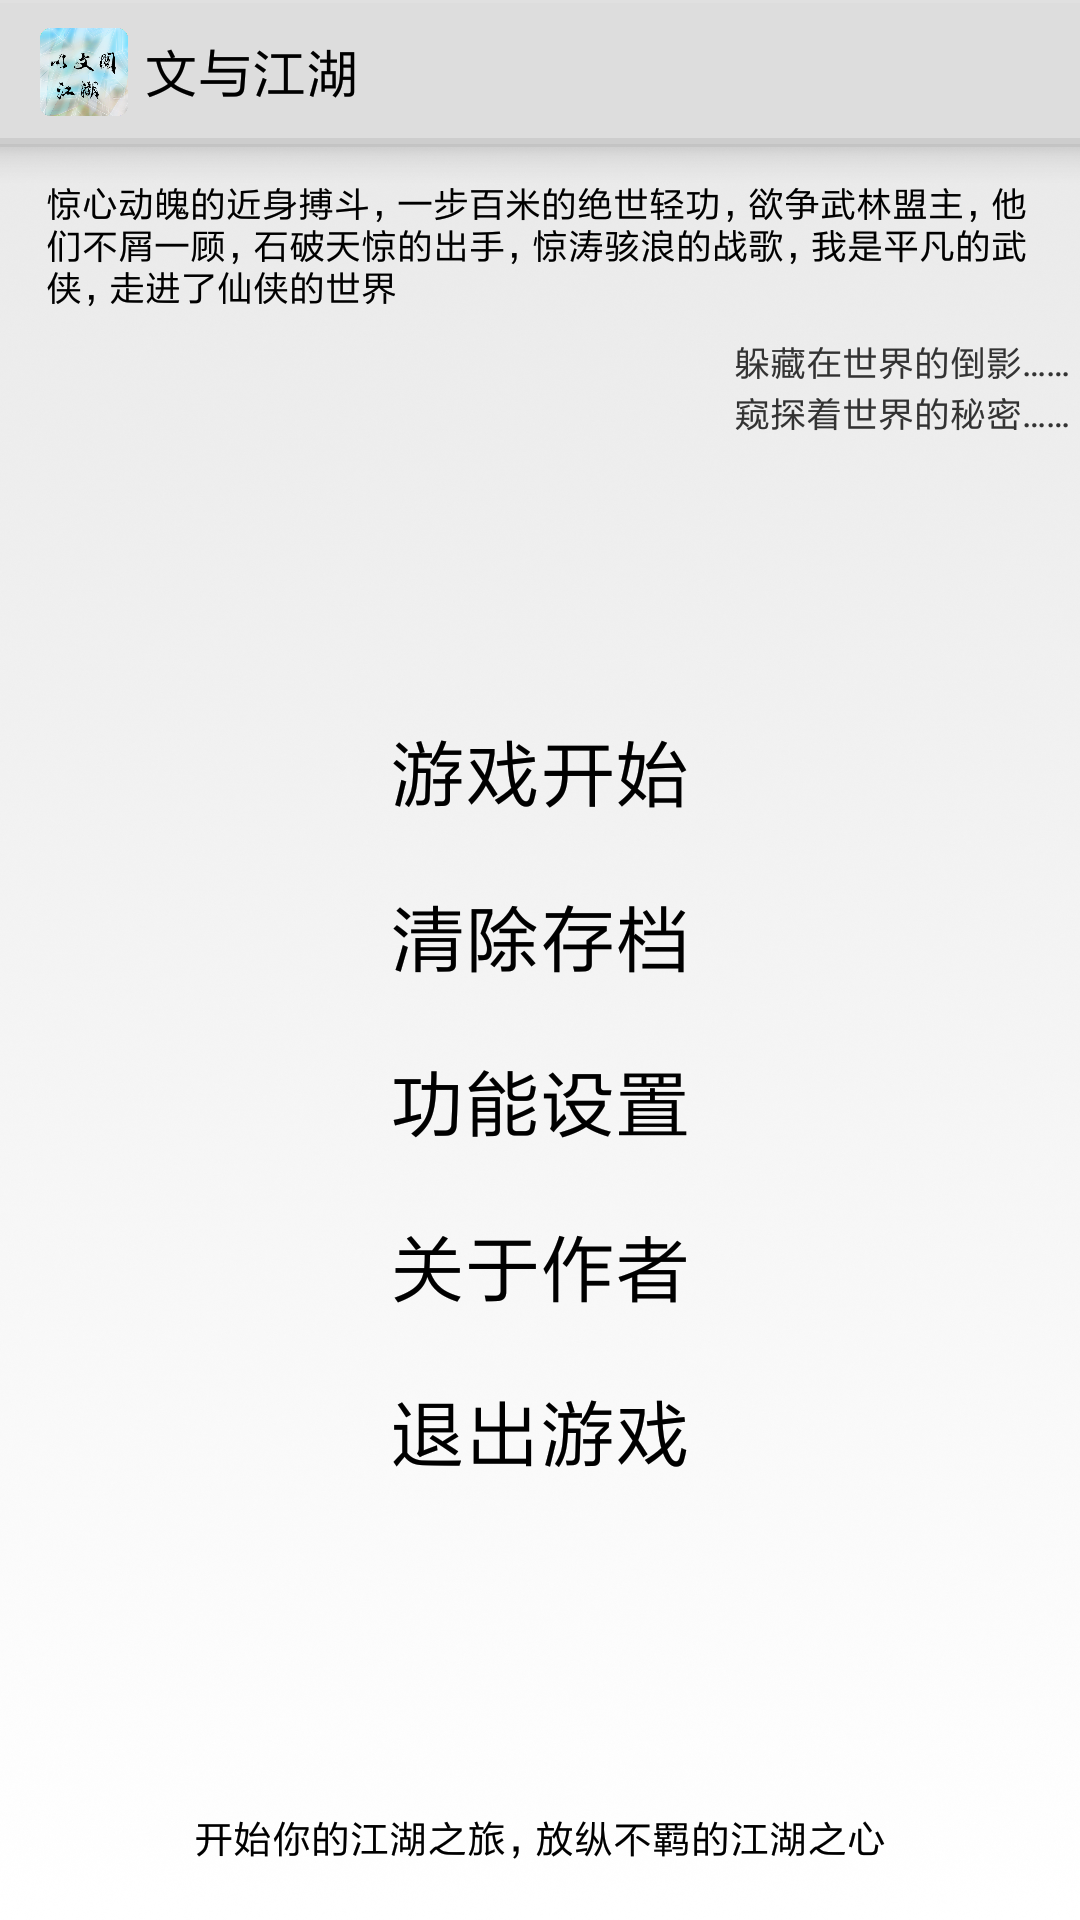 Screenshot 1 of Wen und Jianghu 6.7